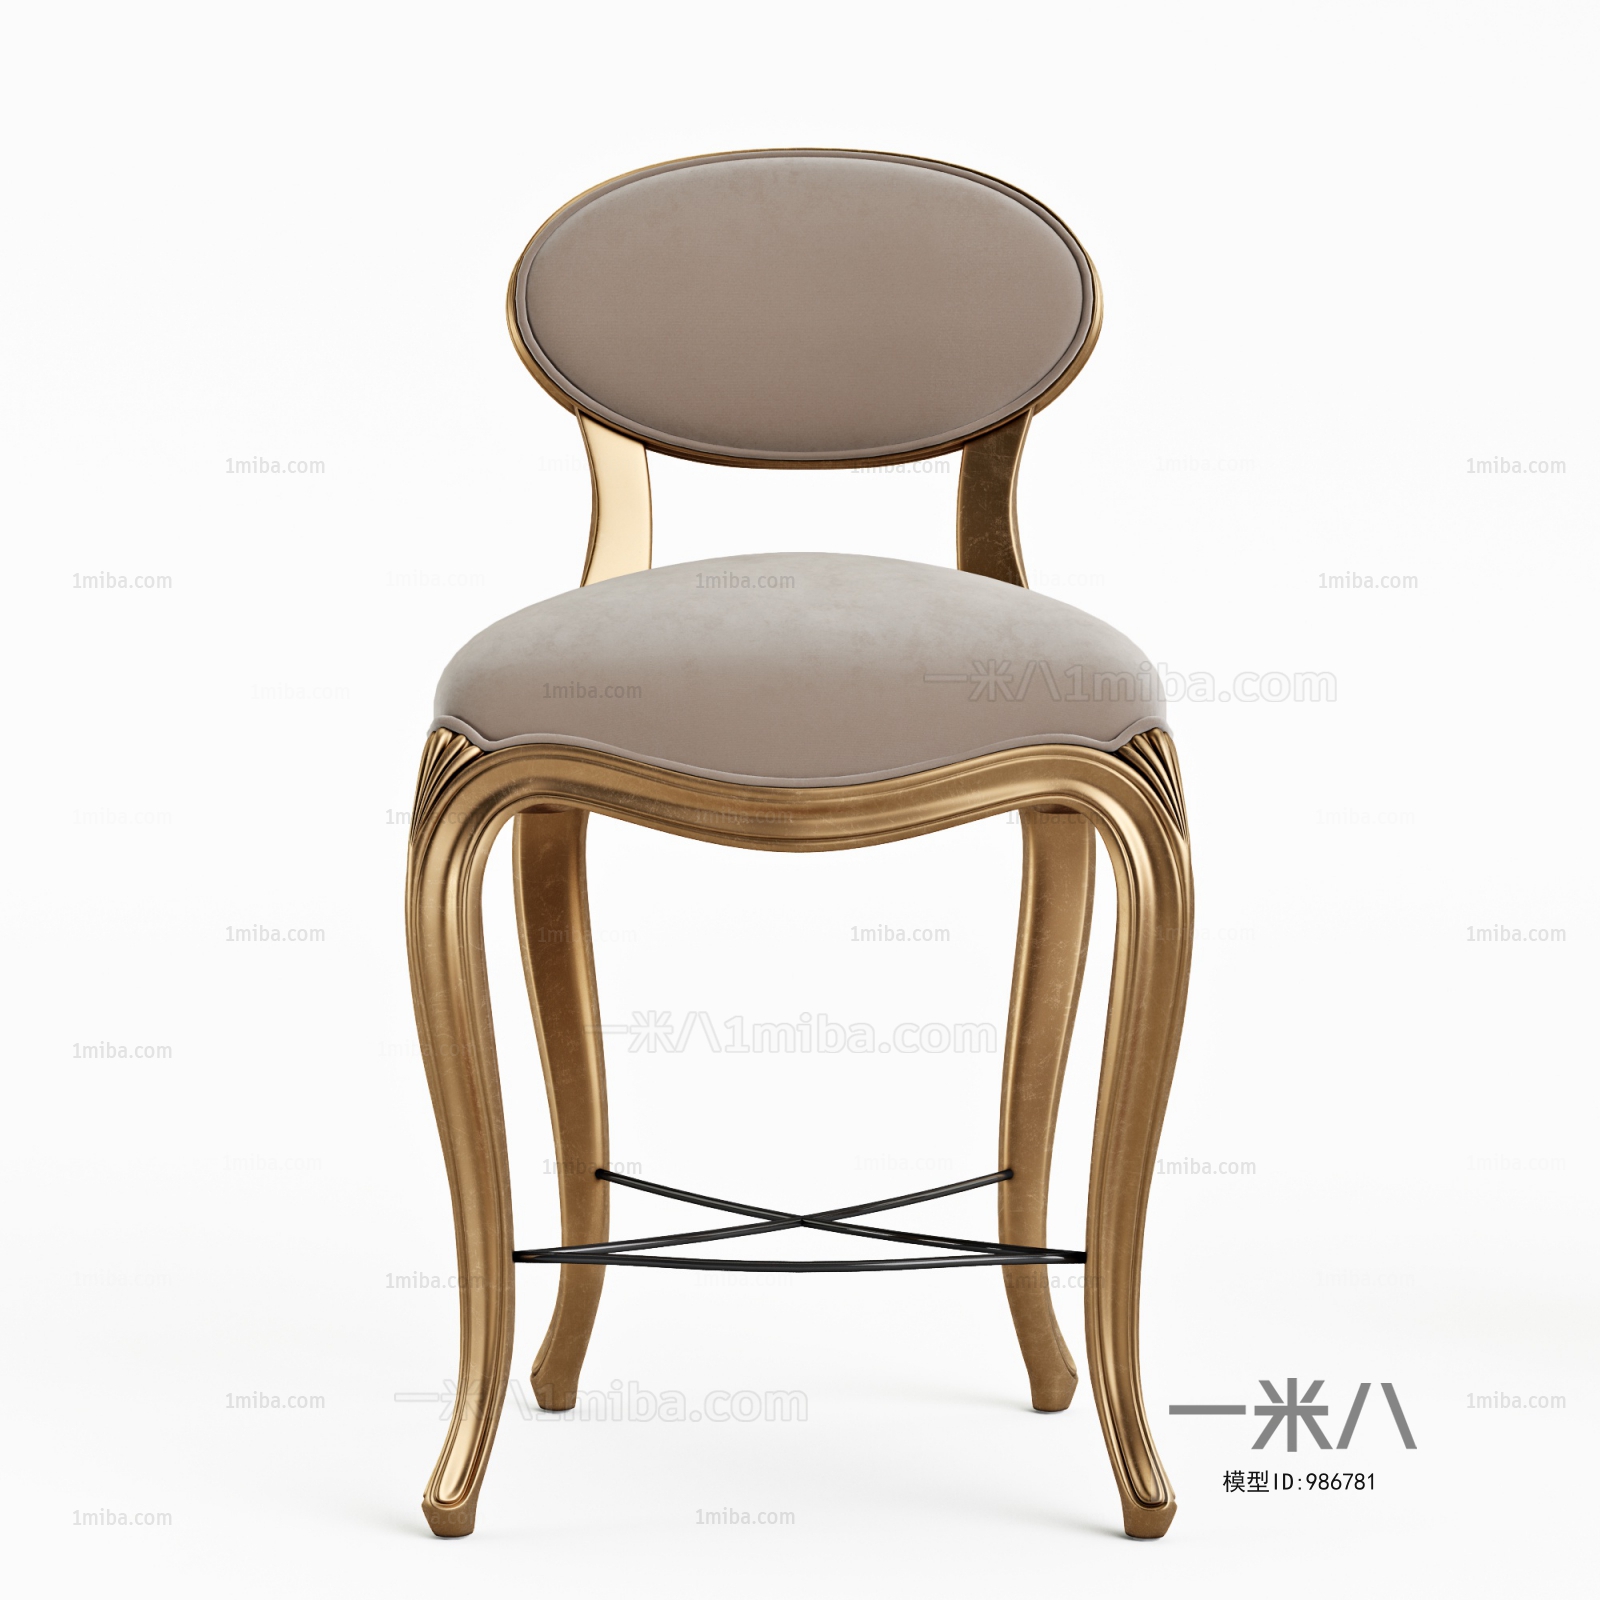 Simple European Style Bar Chair